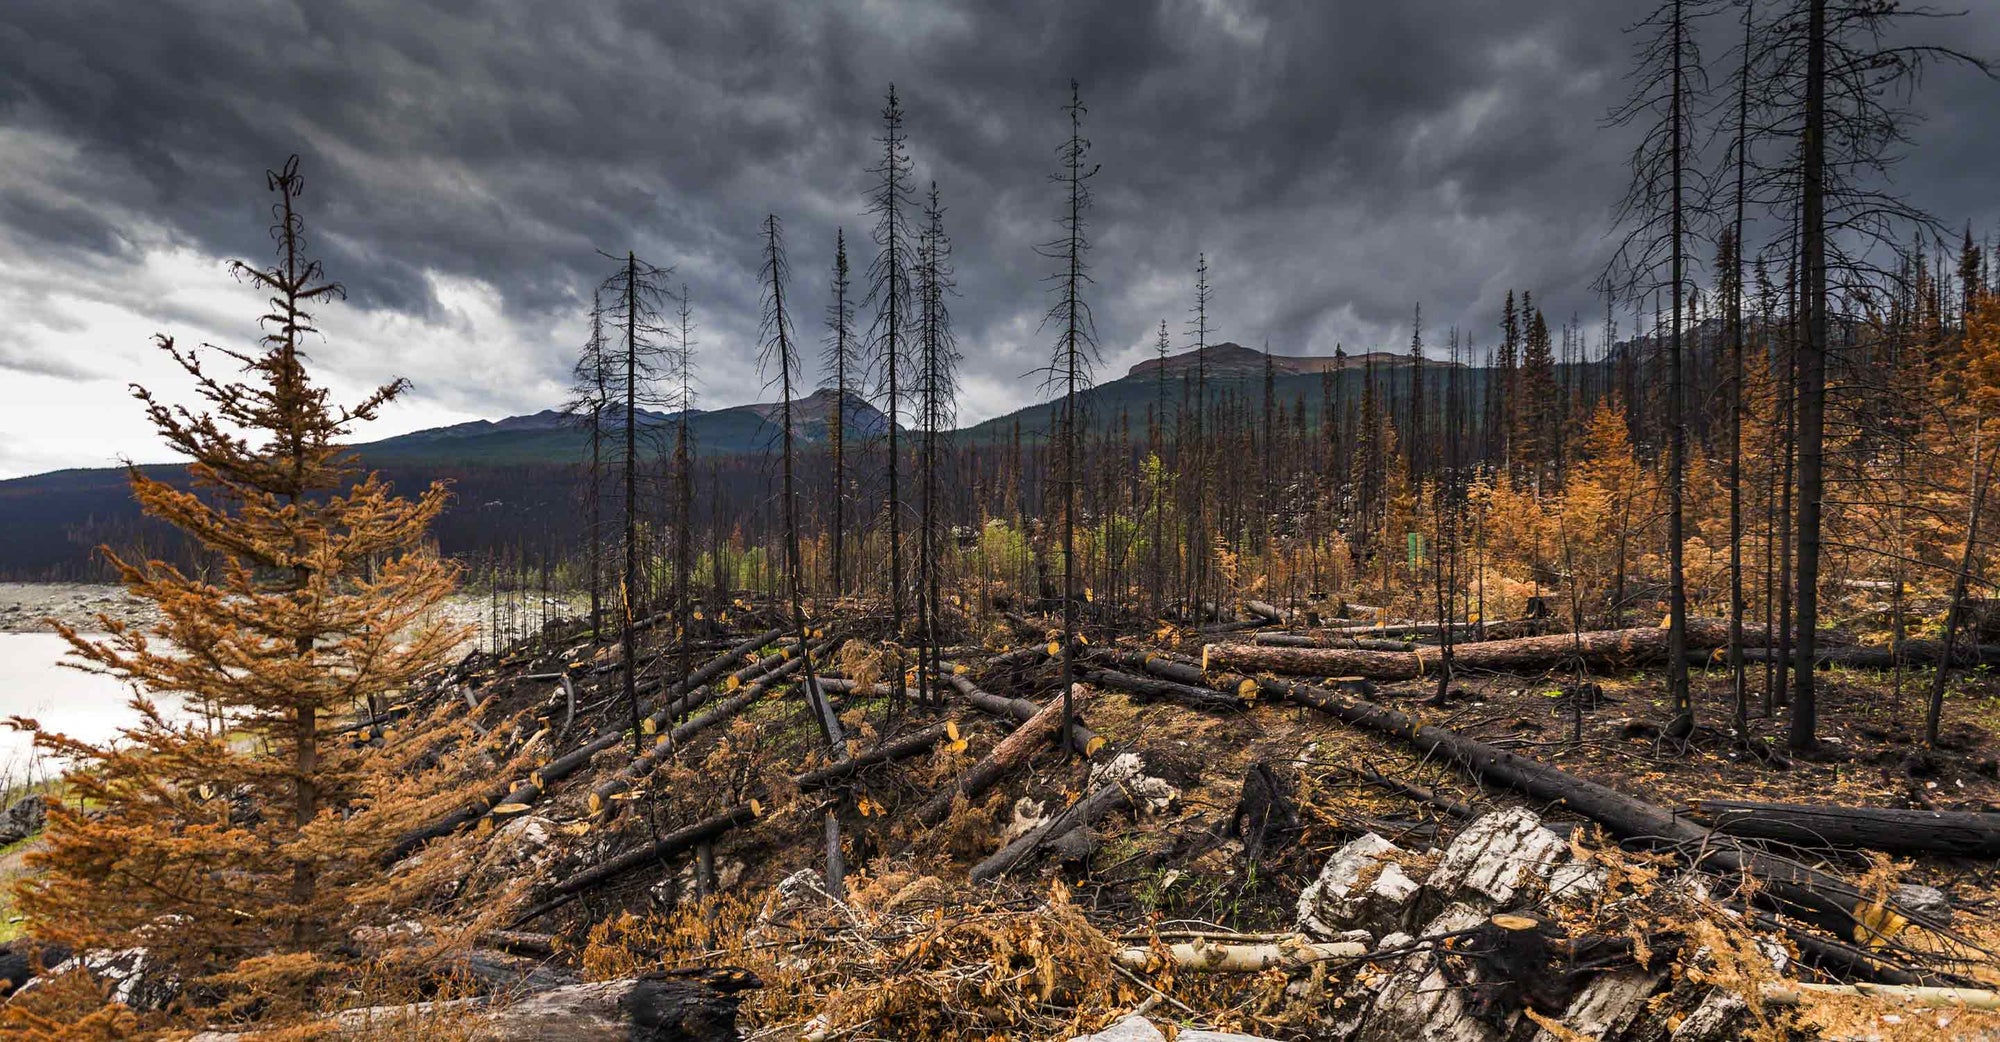 Devastated forest after wild fire